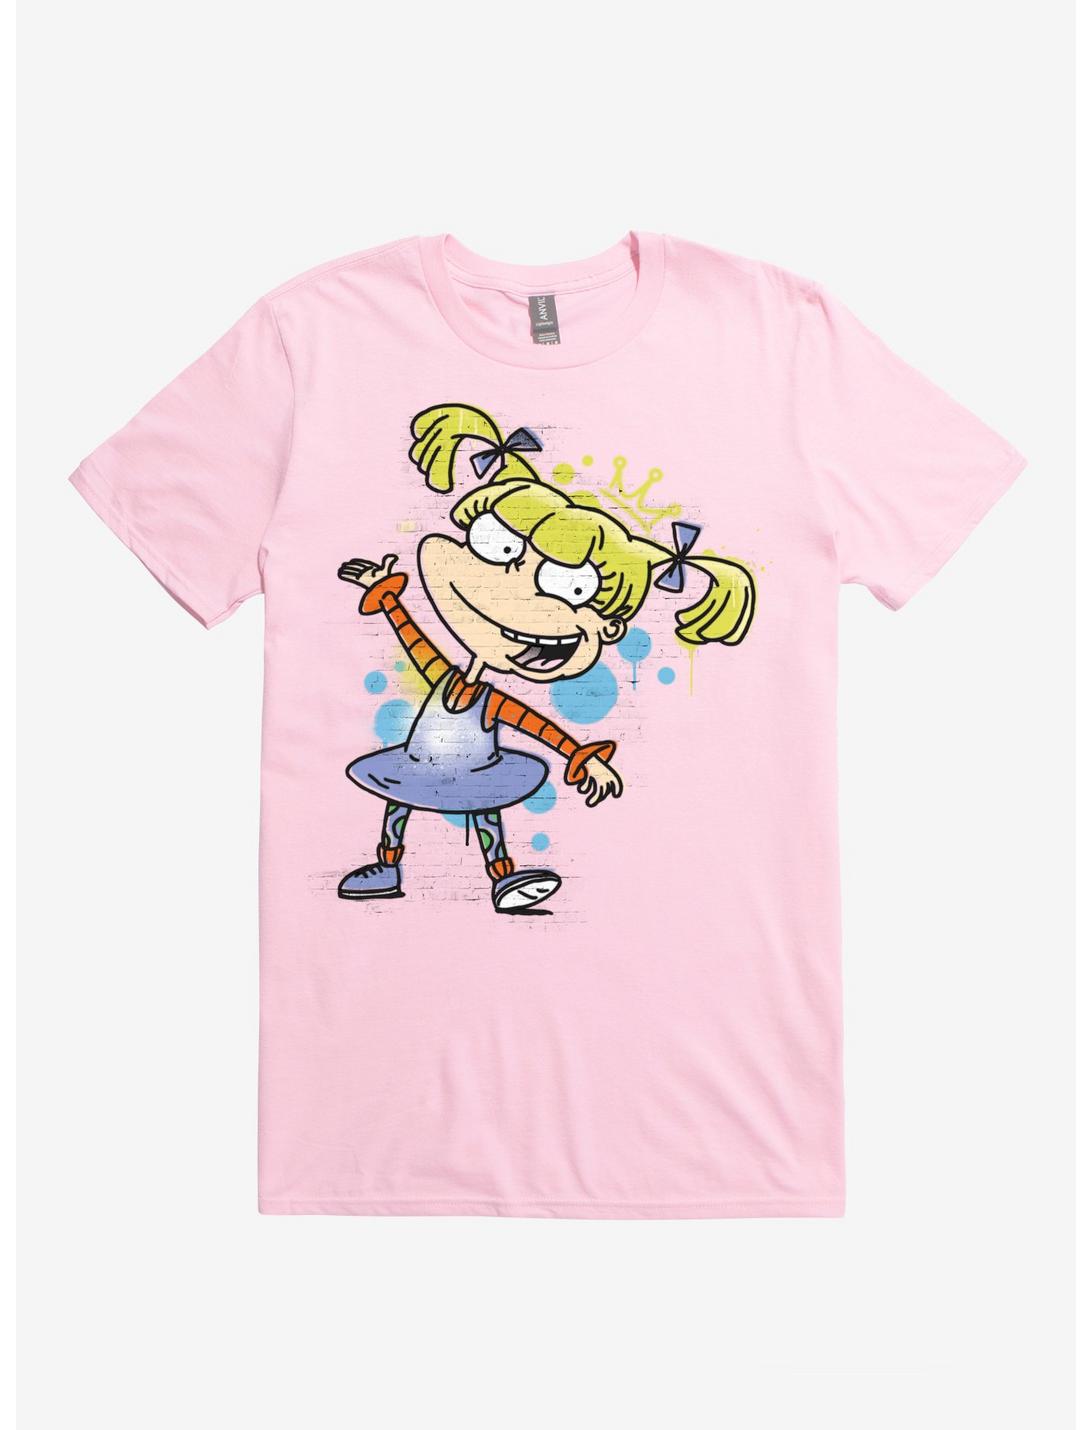 Rugrats Angelica Graffiti T-Shirt, , hi-res